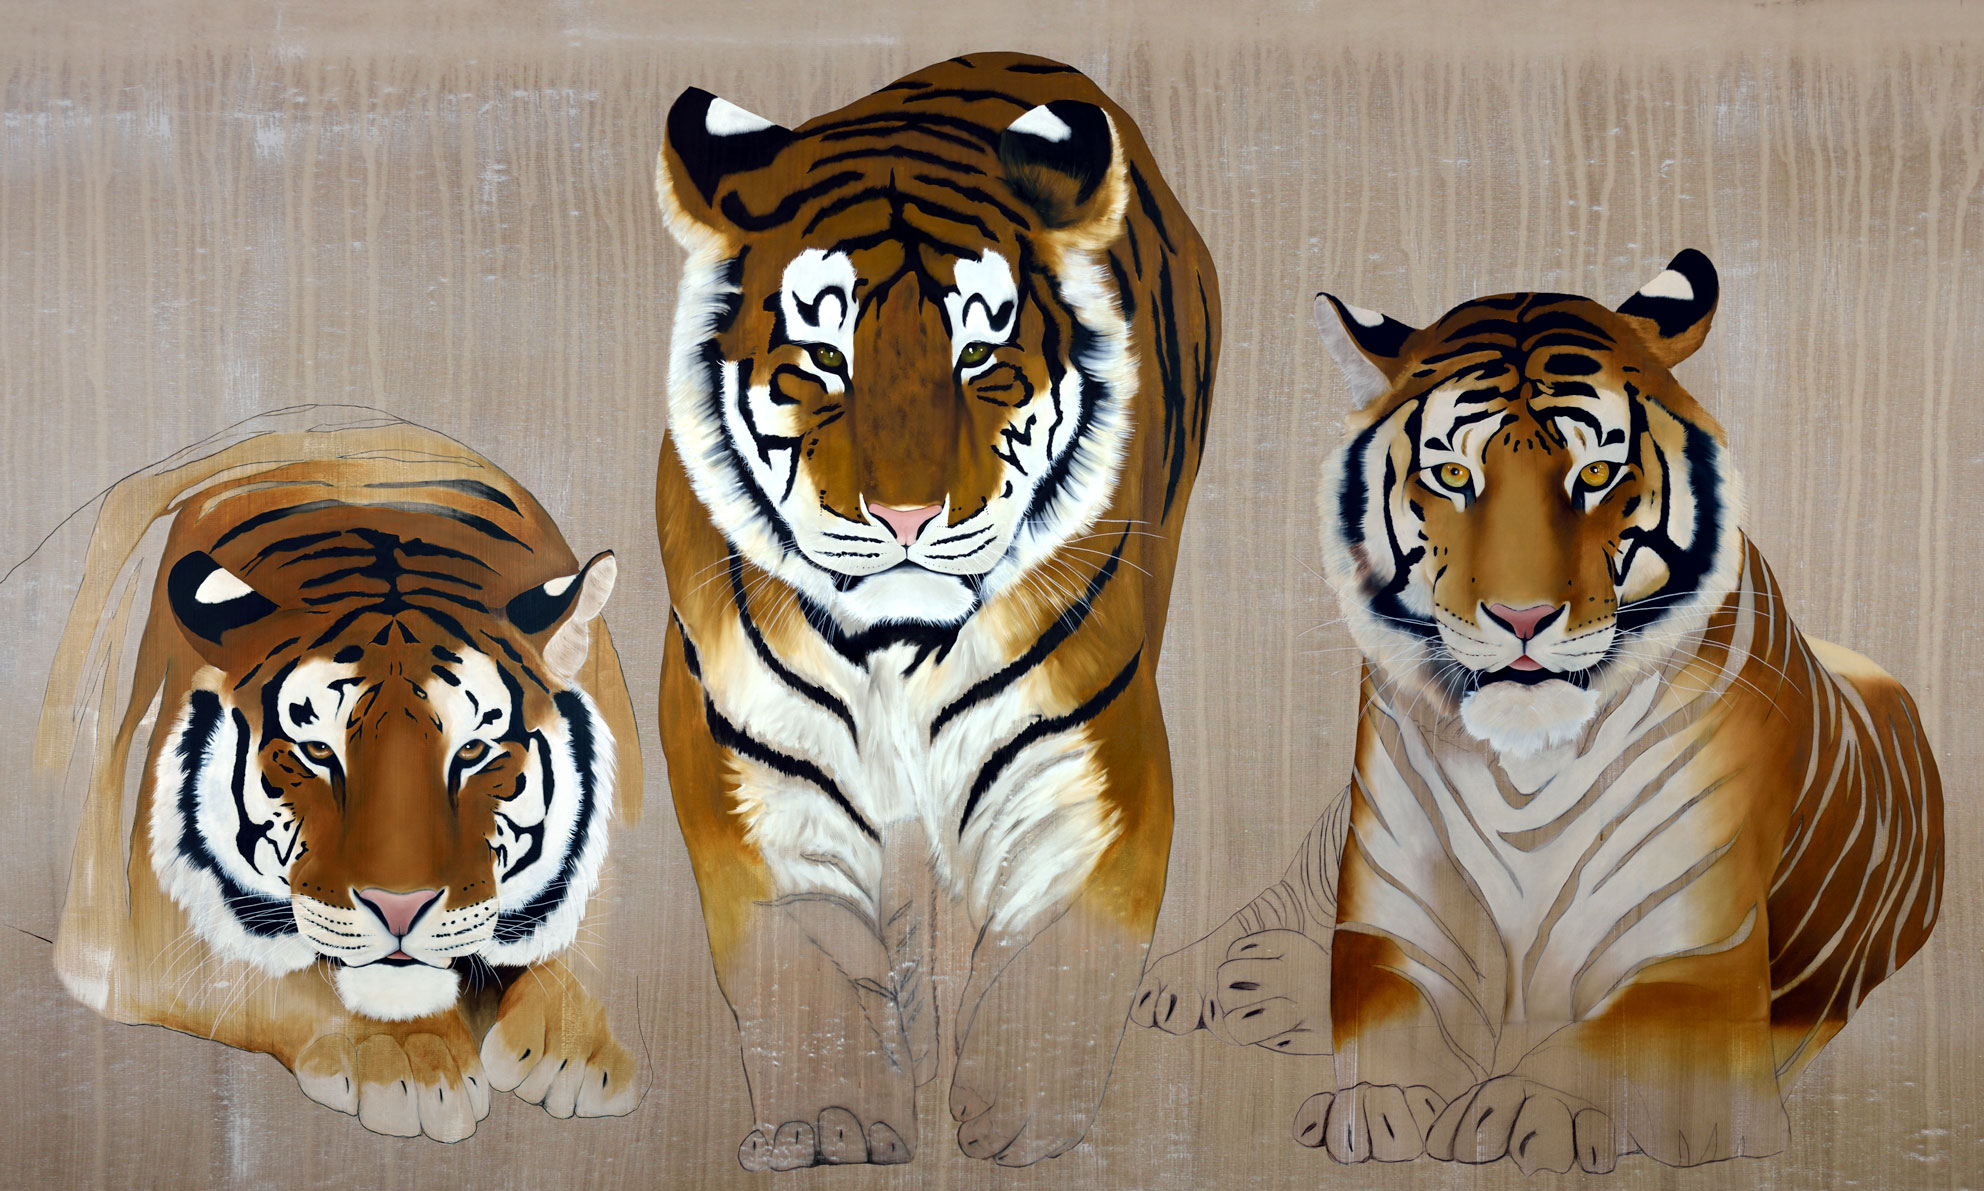 3-TIGERS tigre-panthera-tigris Thierry Bisch artiste peintre contemporain animaux tableau art décoration biodiversité conservation 